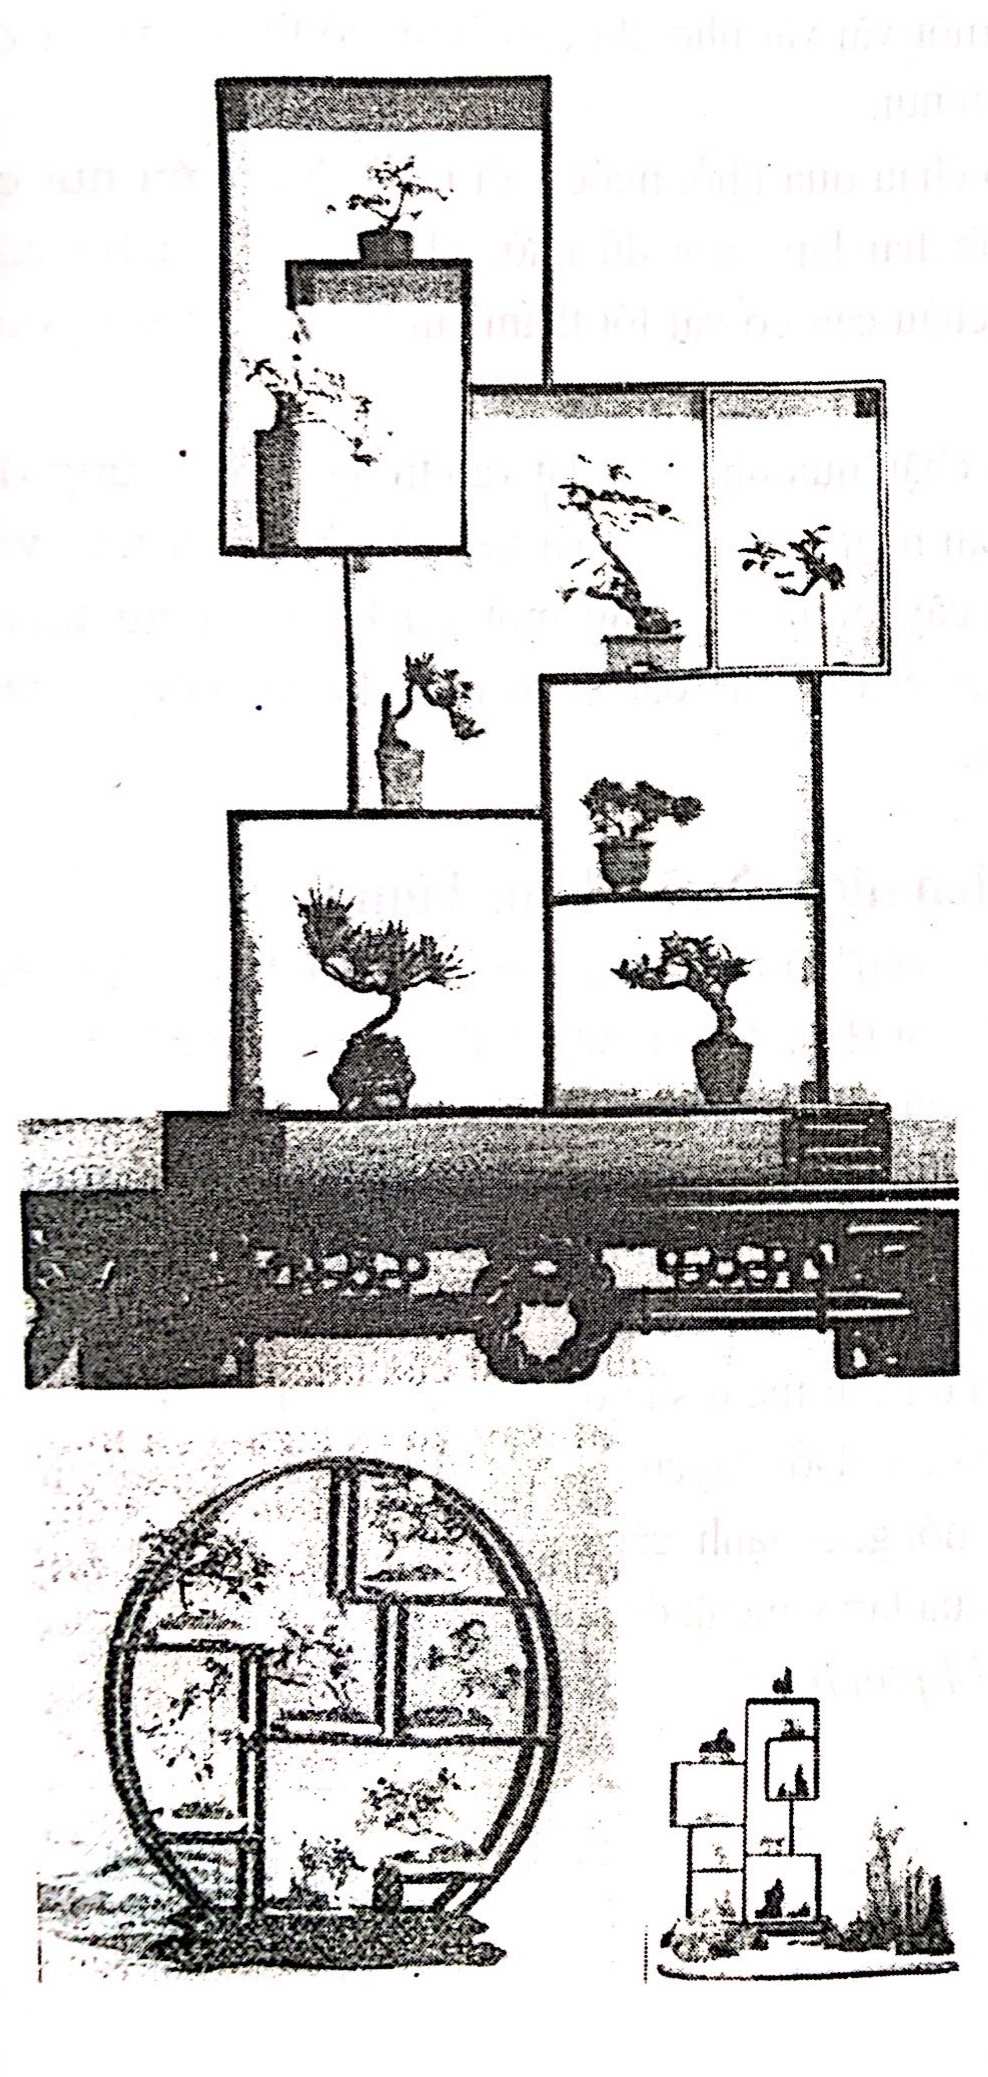 Bồn cảnh Thượng Hải - Nghệ thuật thưởng thức bonsai - Trần Hợp